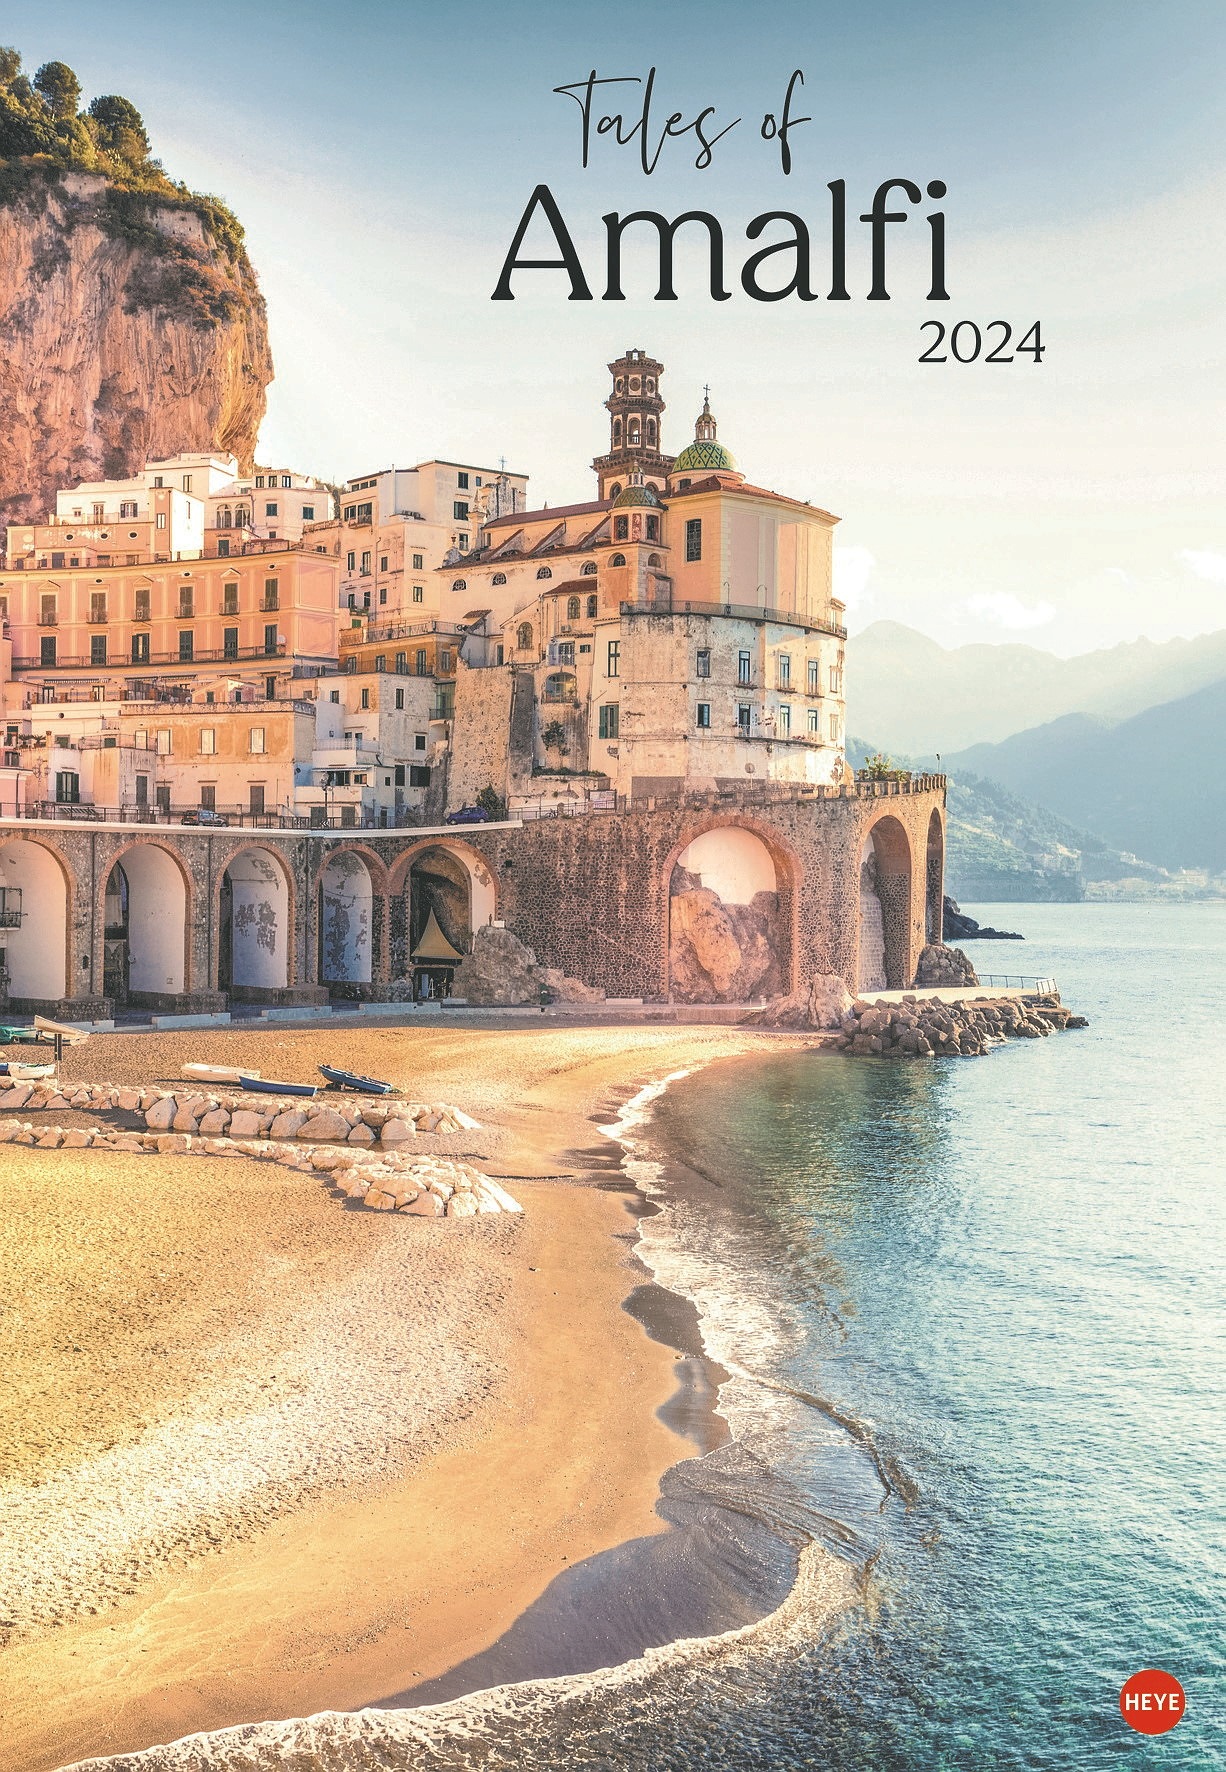 View ofer the Coast Amalfi 2024